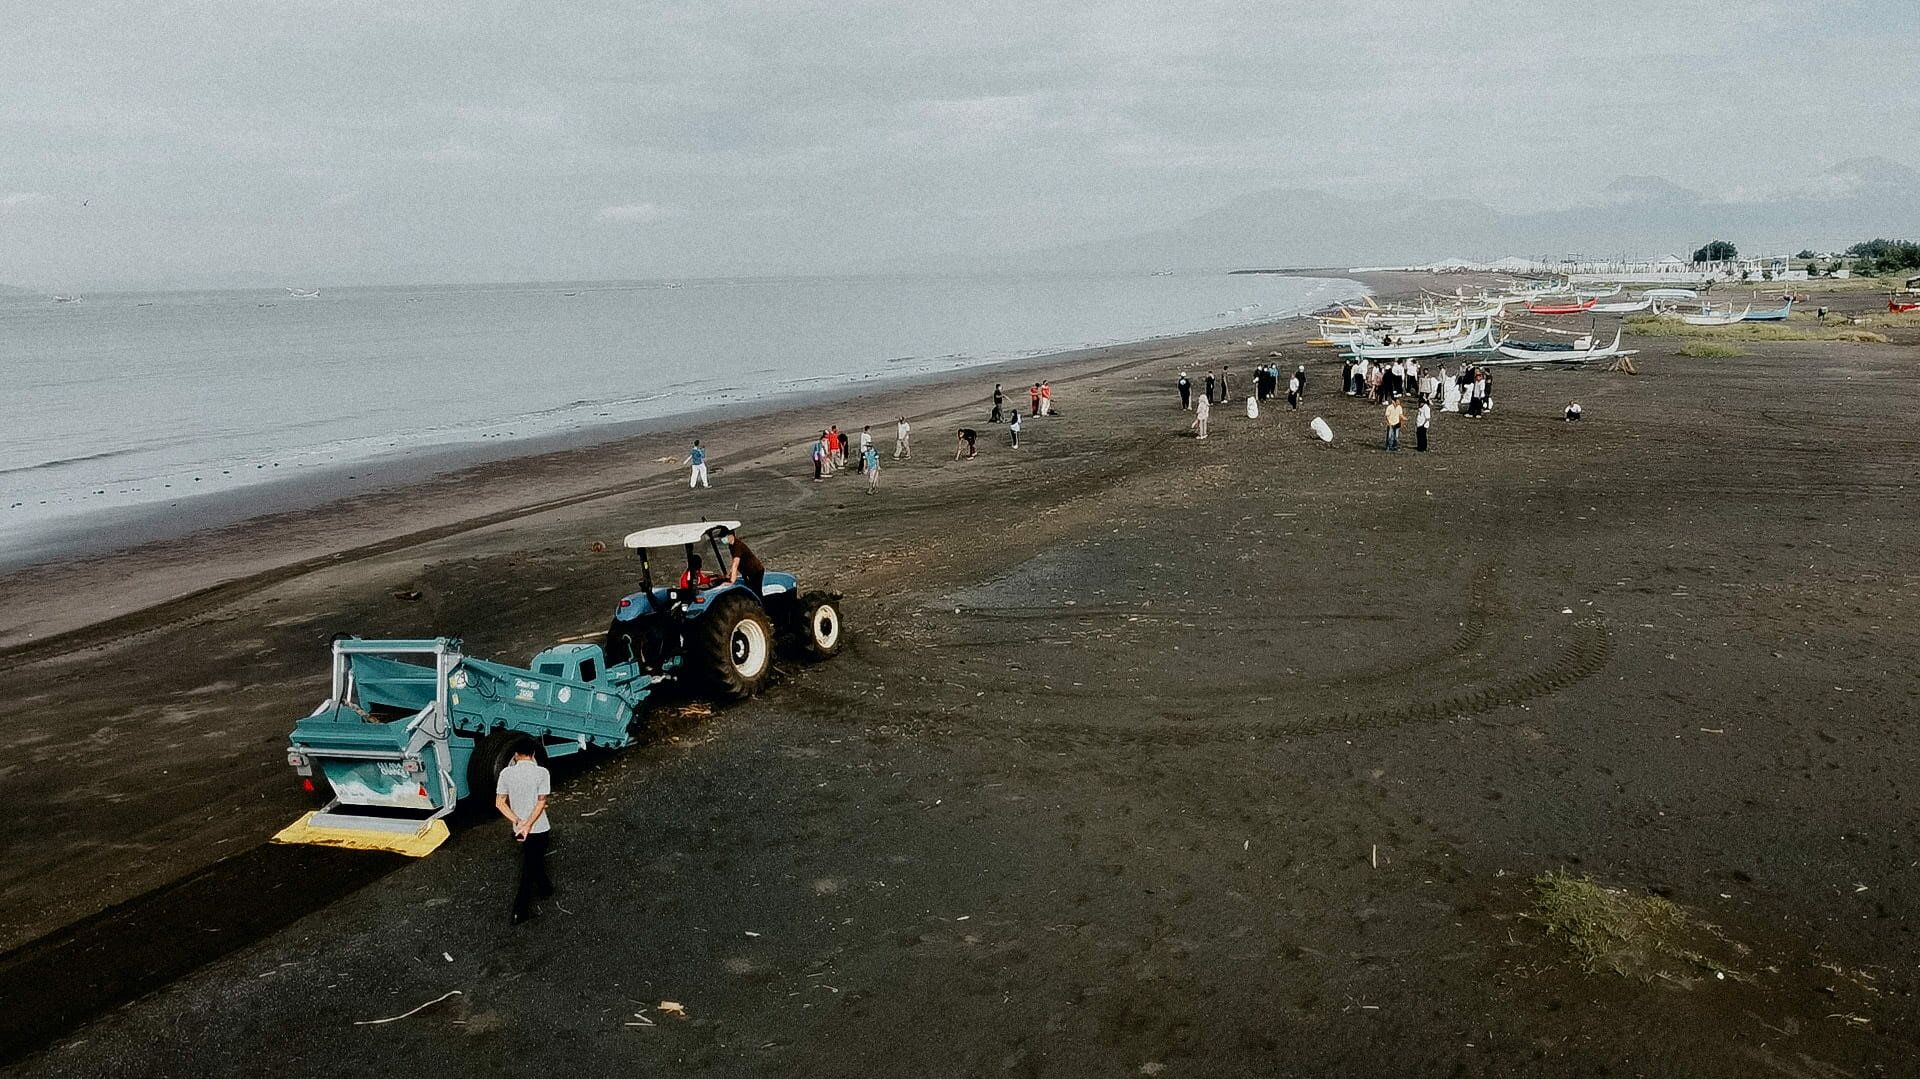 BeachTech: Strandreinigungsaktion auf Bali